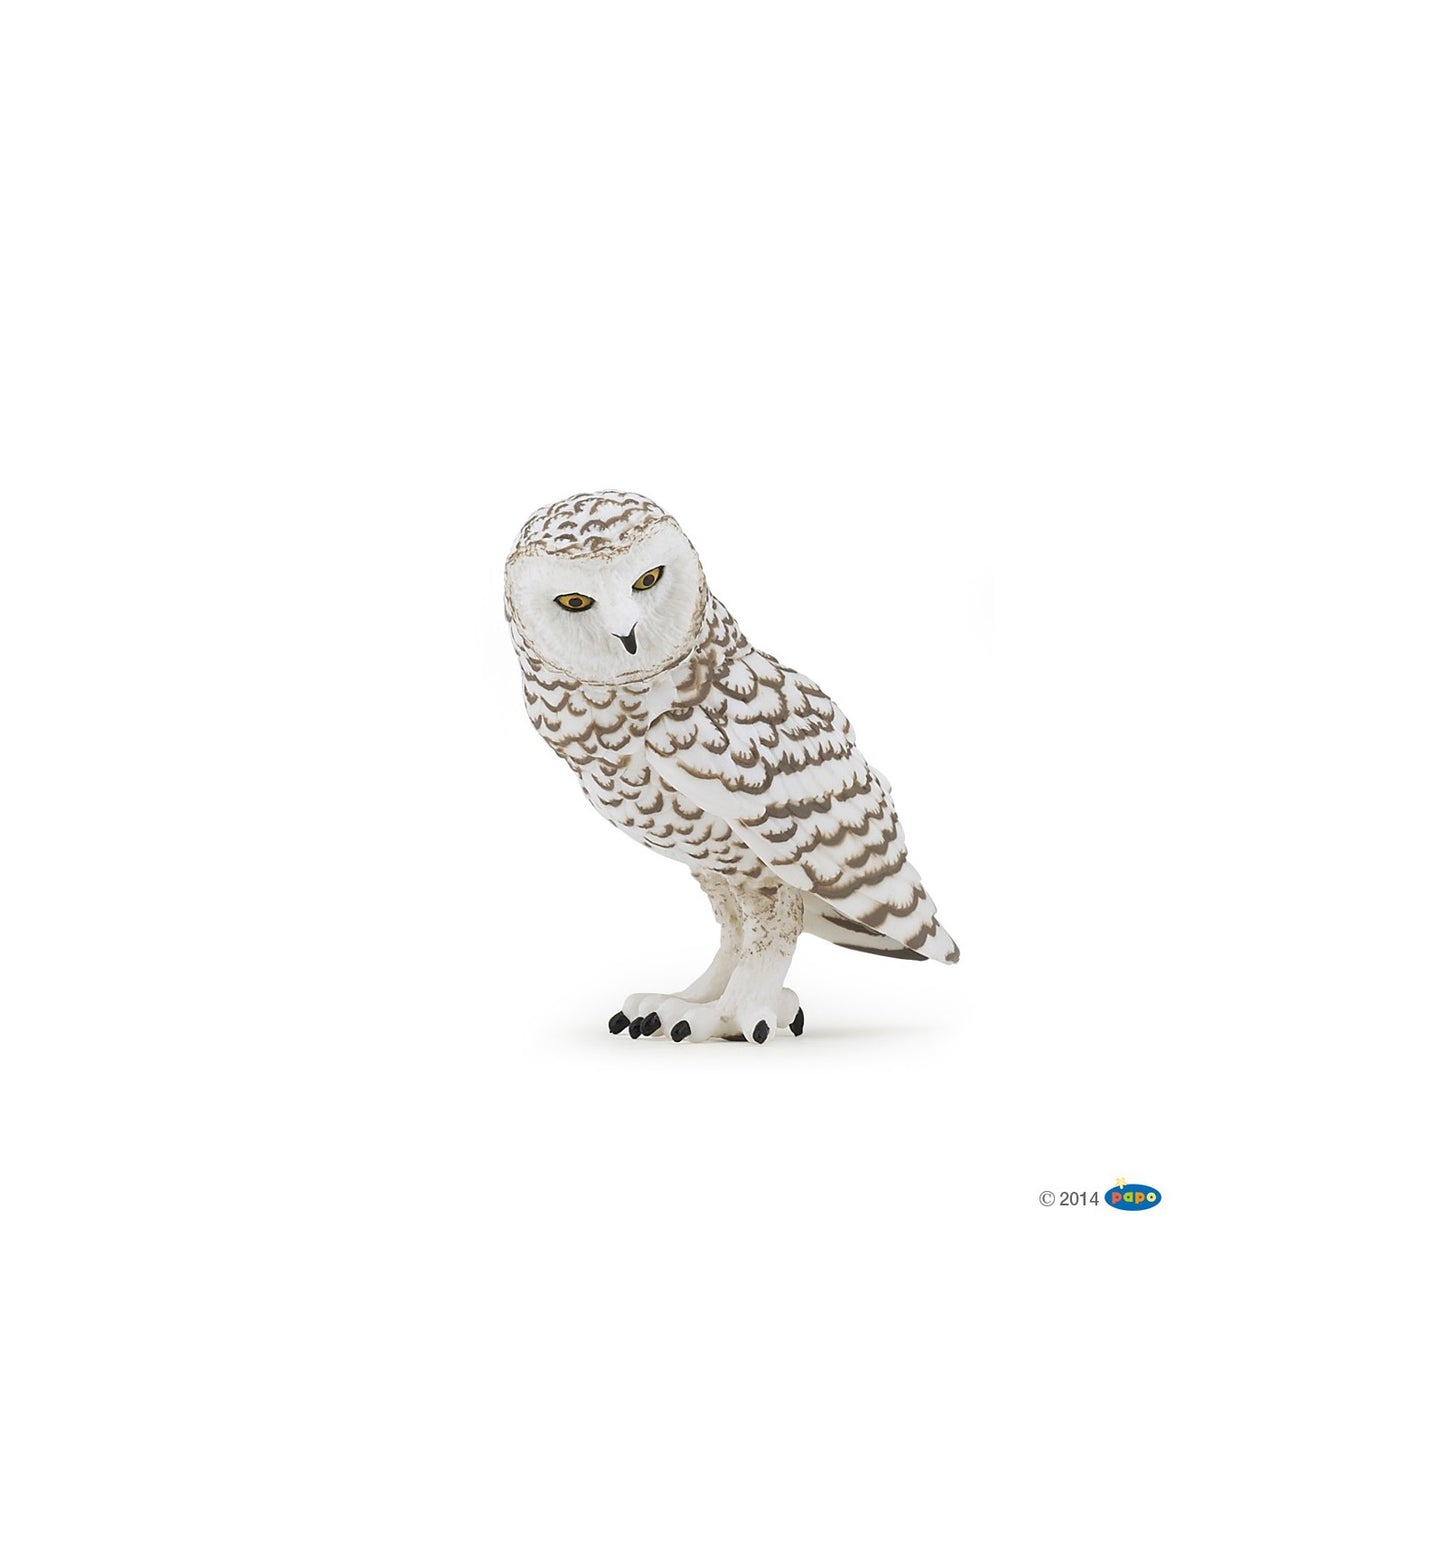 Snowy Owl - Papo Figurine